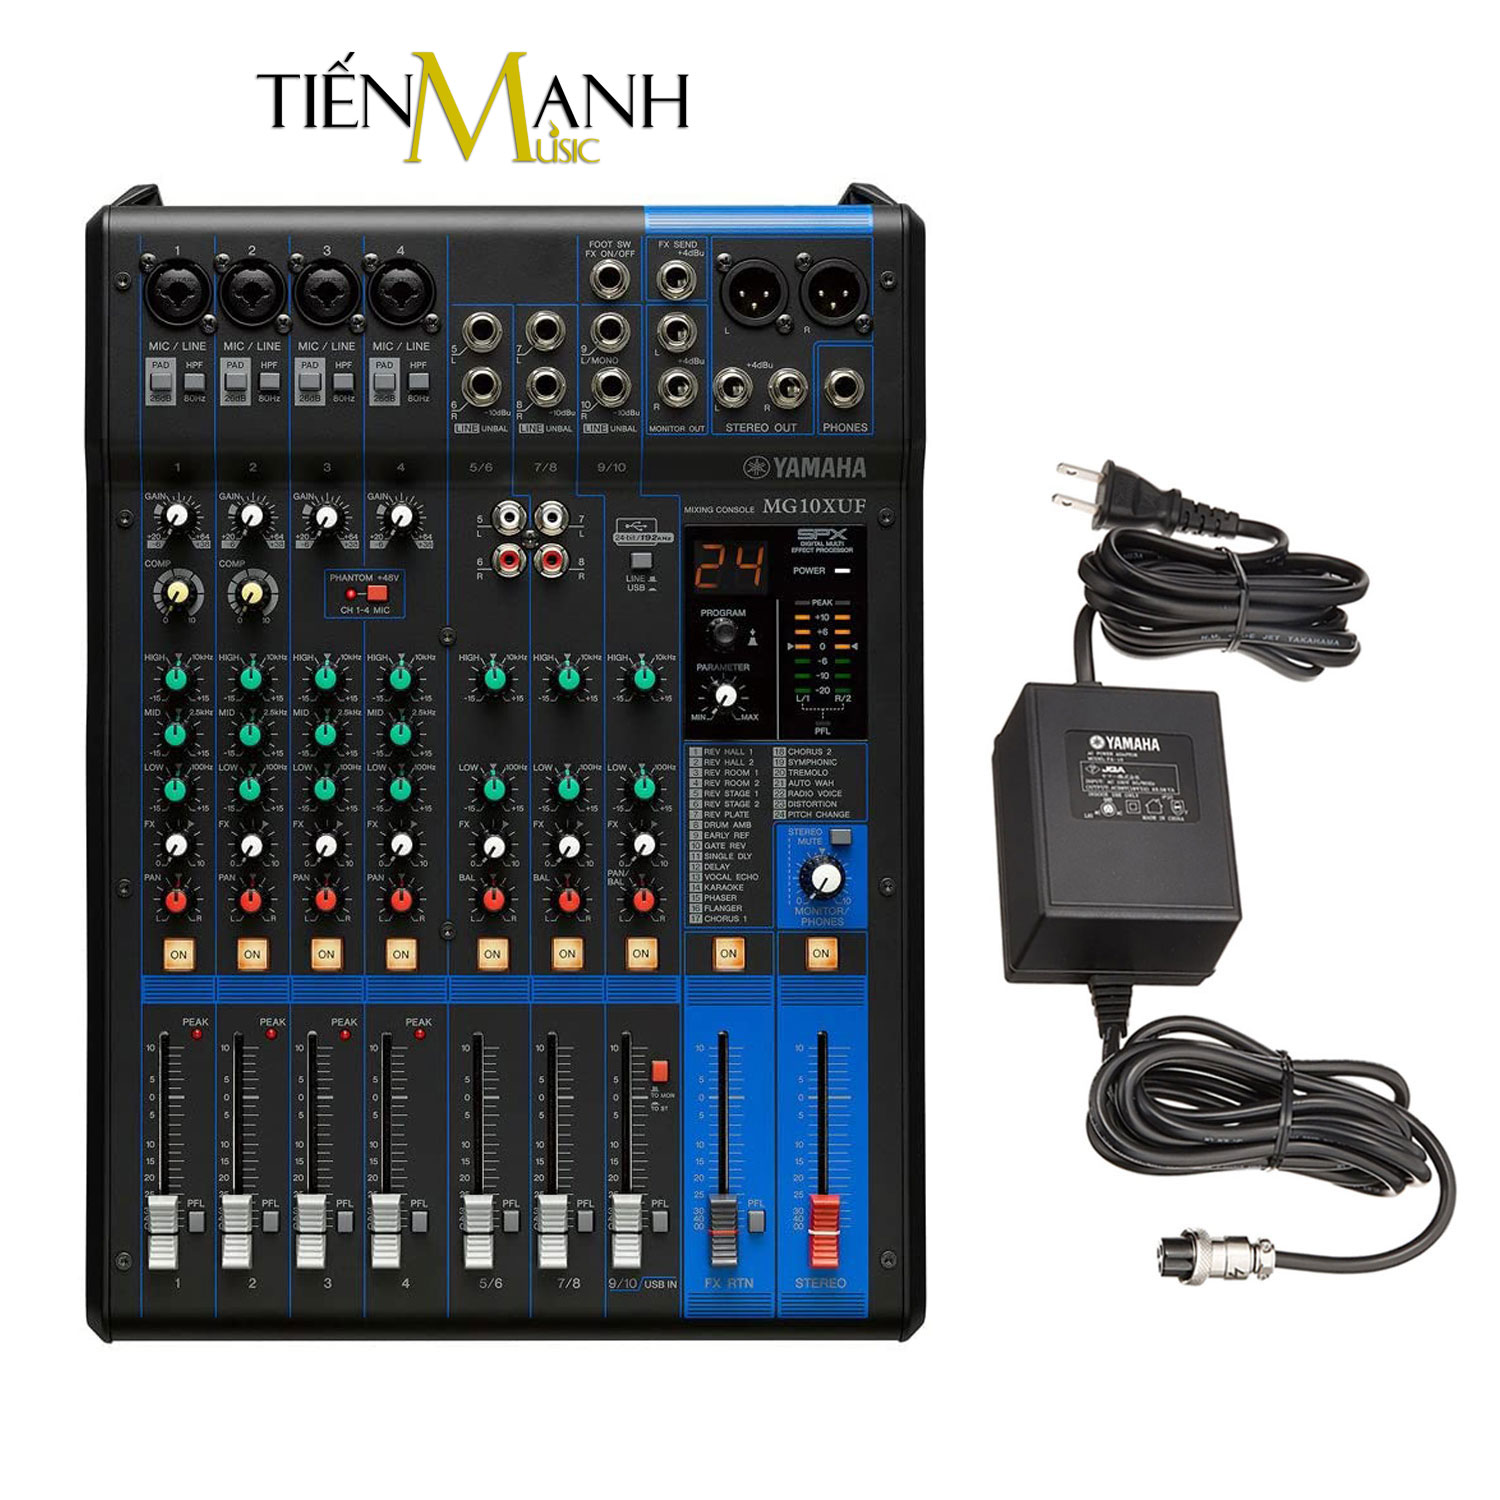 Yamaha MG10XUF Soundcard kiêm Bàn Trộn Mixer Interface Compact Stereo Mixing Console Phòng Thu Studio Mix Hàng Chính Hãng - Kèm Móng Gẩy DreamMaker